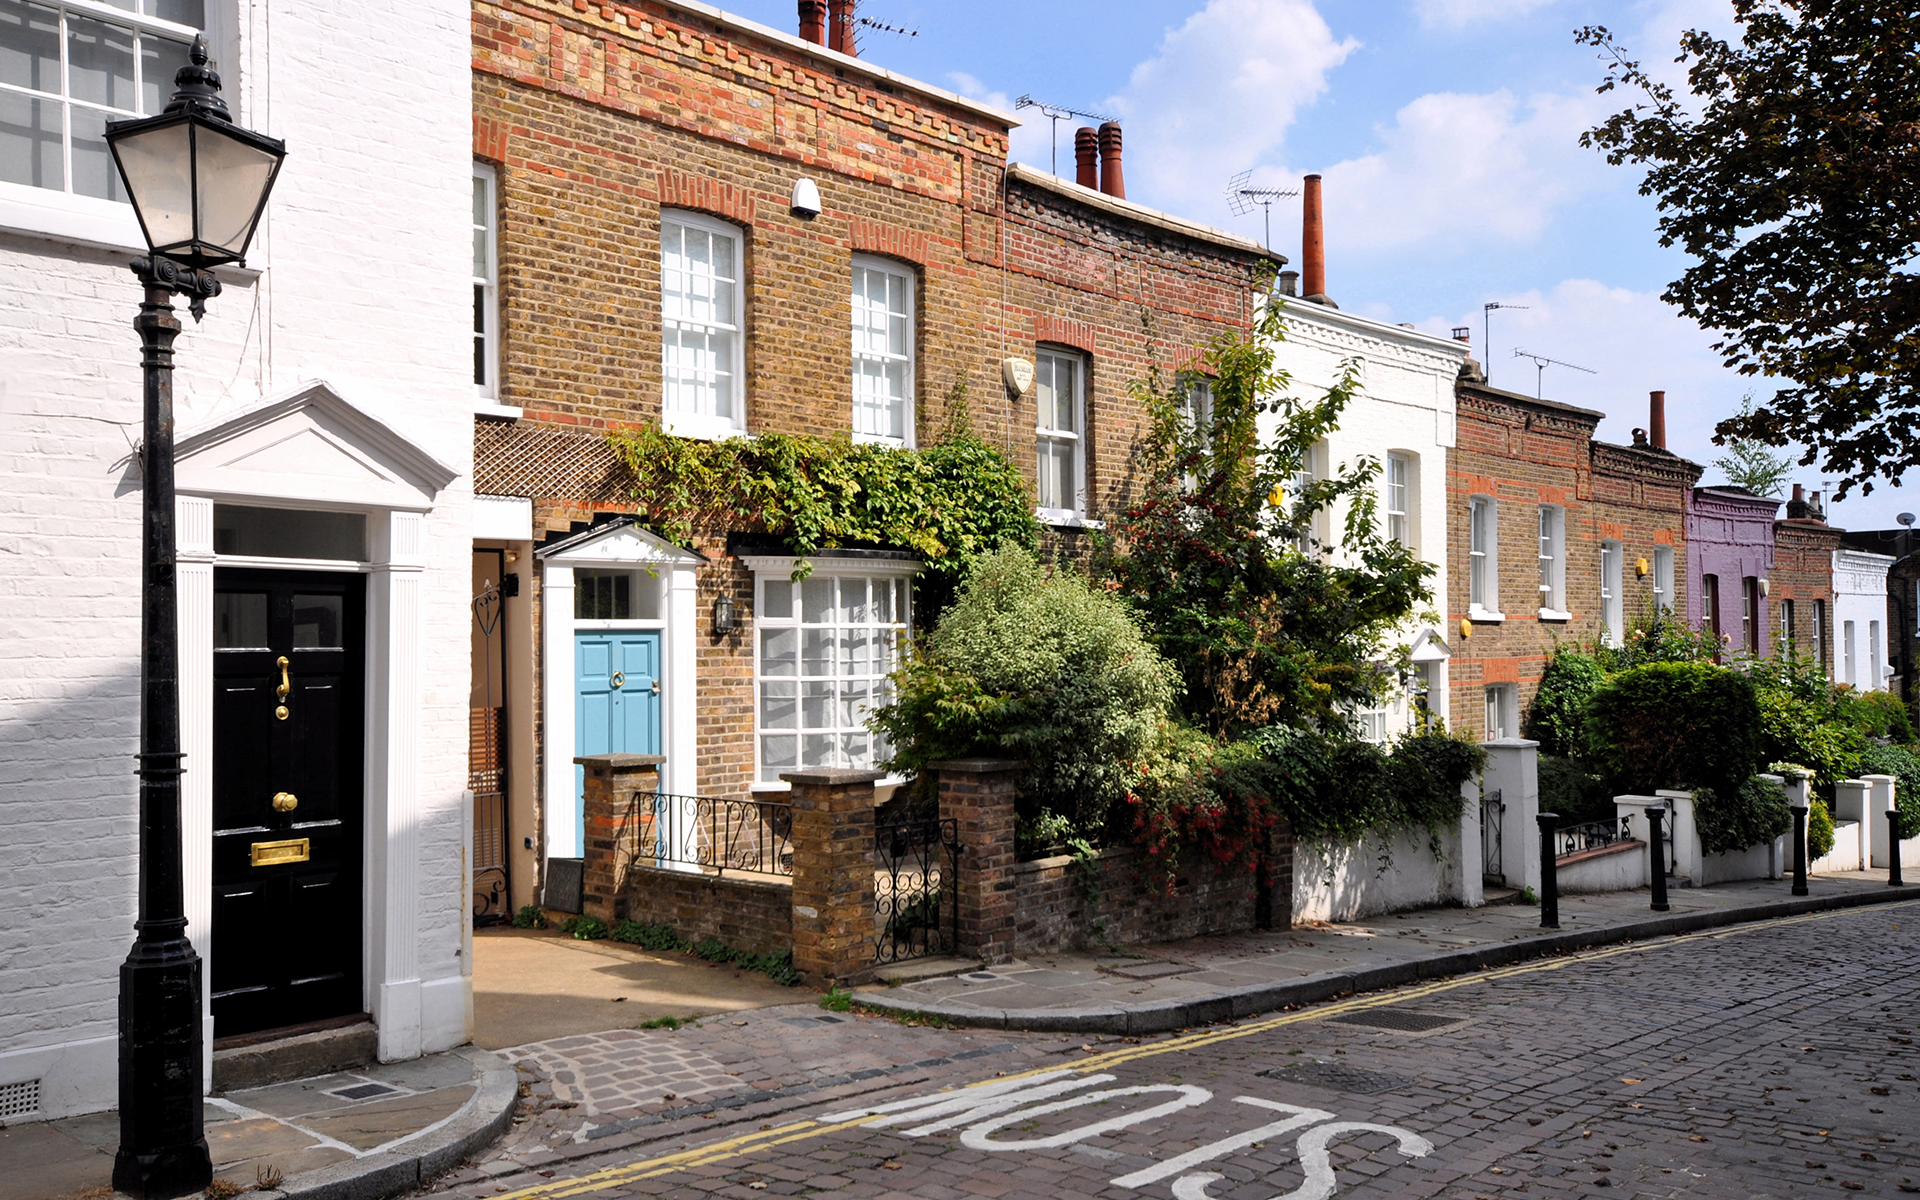 Similar Property: House in Marylebone